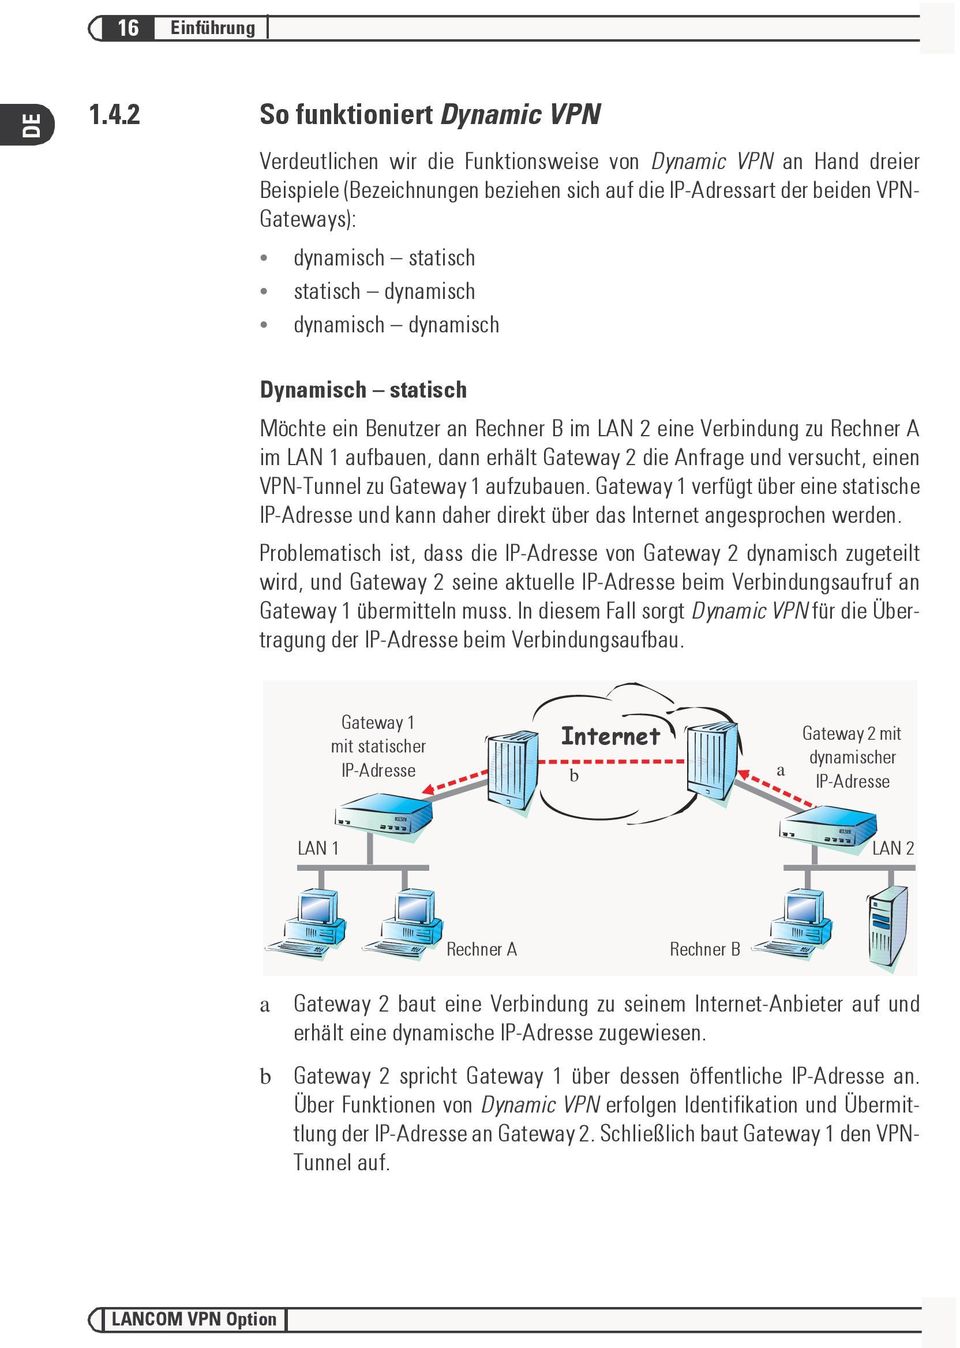 statisch statisch dynamisch dynamisch dynamisch Dynamisch statisch Möchte ein Benutzer an Rechner B im LAN 2 eine Verbindung zu Rechner A im LAN 1 aufbauen, dann erhält Gateway 2 die Anfrage und